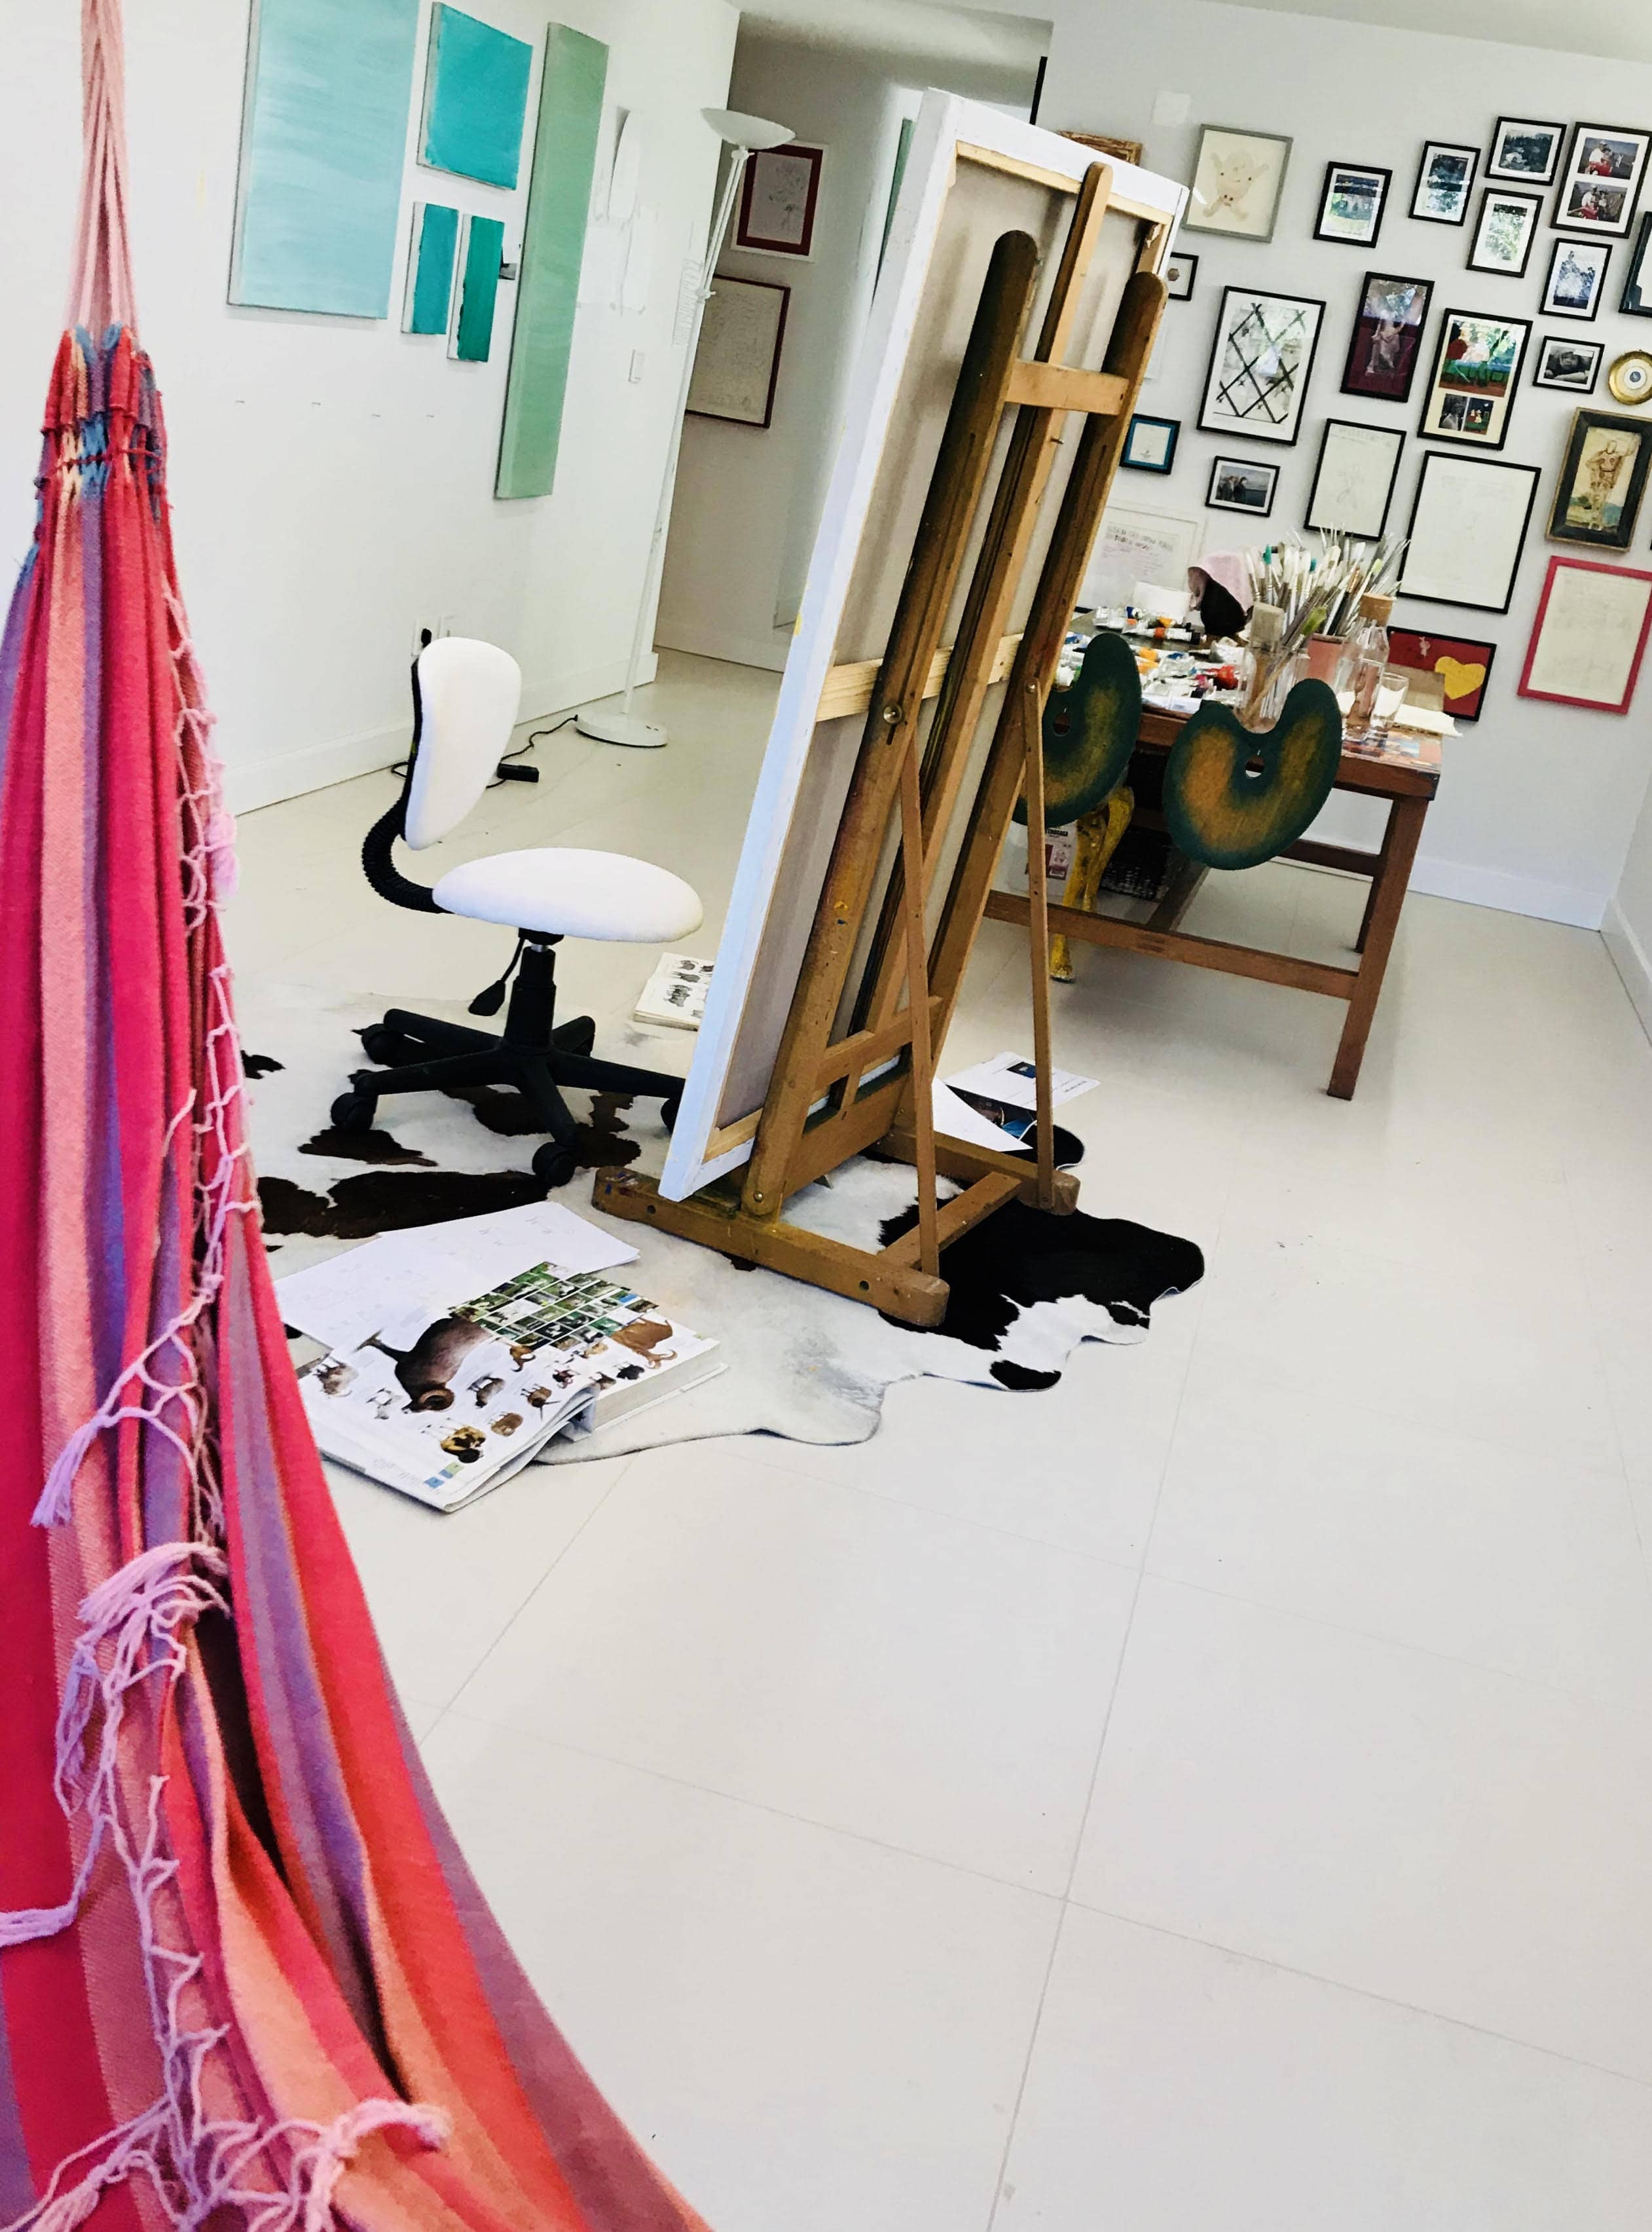 Escoril Cristina Rodriguez Studio at Portugal in 2018